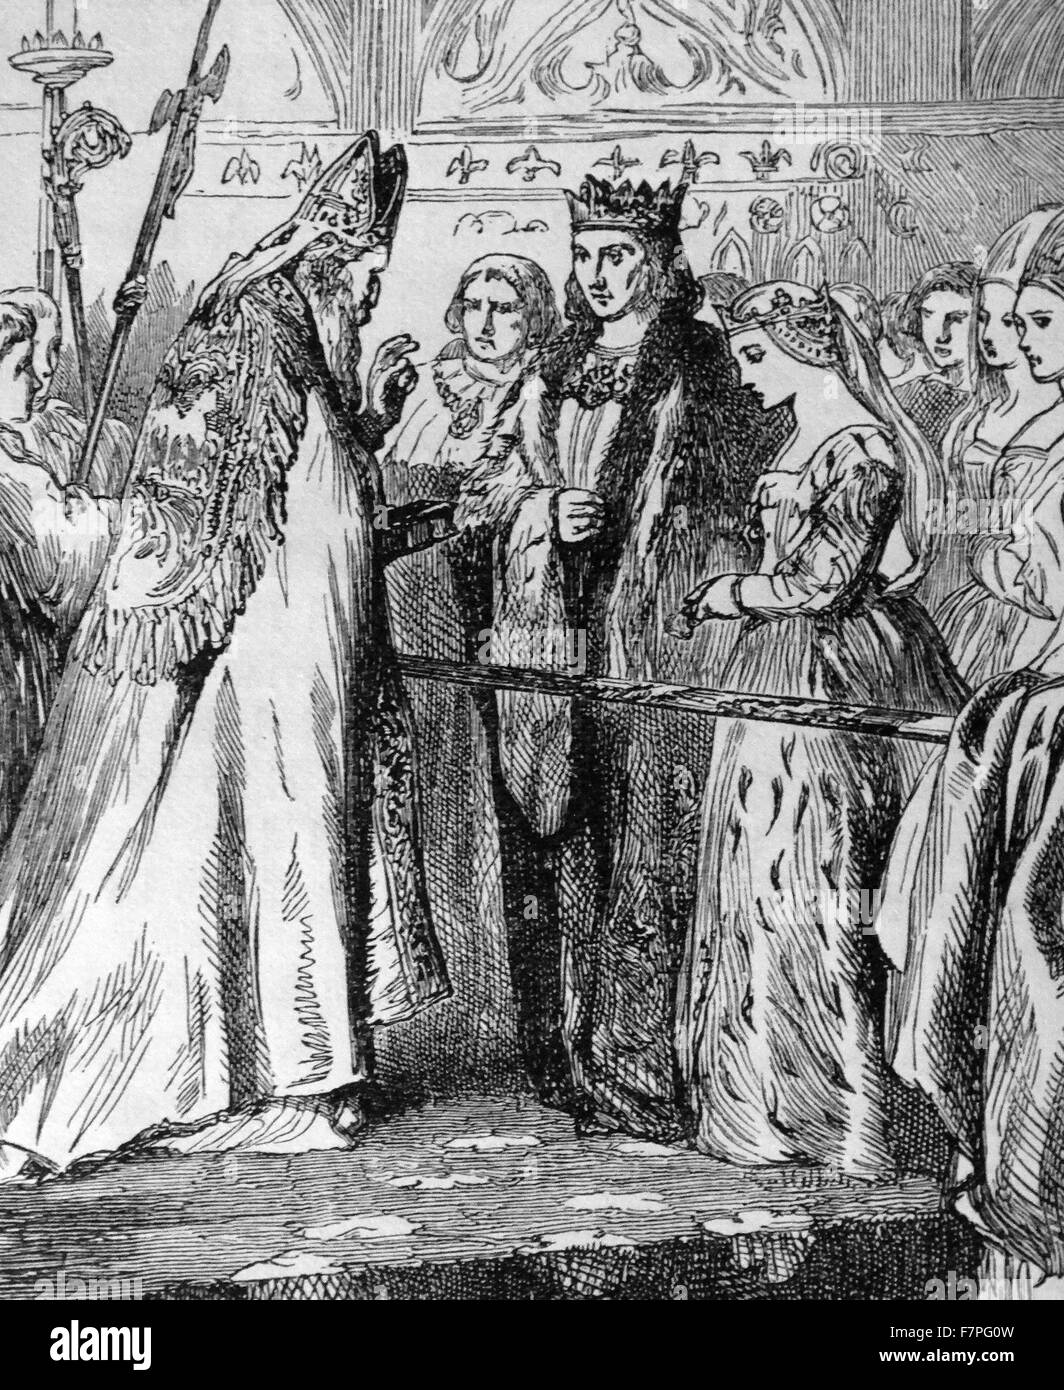 Le mariage du roi Henry VII et Elizabeth d'York. Henry VII Tudor (Gallois : Harri;28 Janvier 1457 - 21 avril 1509) fut roi d'Angleterre, a jugé la Principauté de galles[1] (jusqu'au 29 novembre 1489) et Seigneur d'Irlande à partir de sa saisie de la couronne le 22 août 1485 jusqu'à sa mort le 21 avril 1509, comme le premier monarque de la maison de Tudor. Banque D'Images